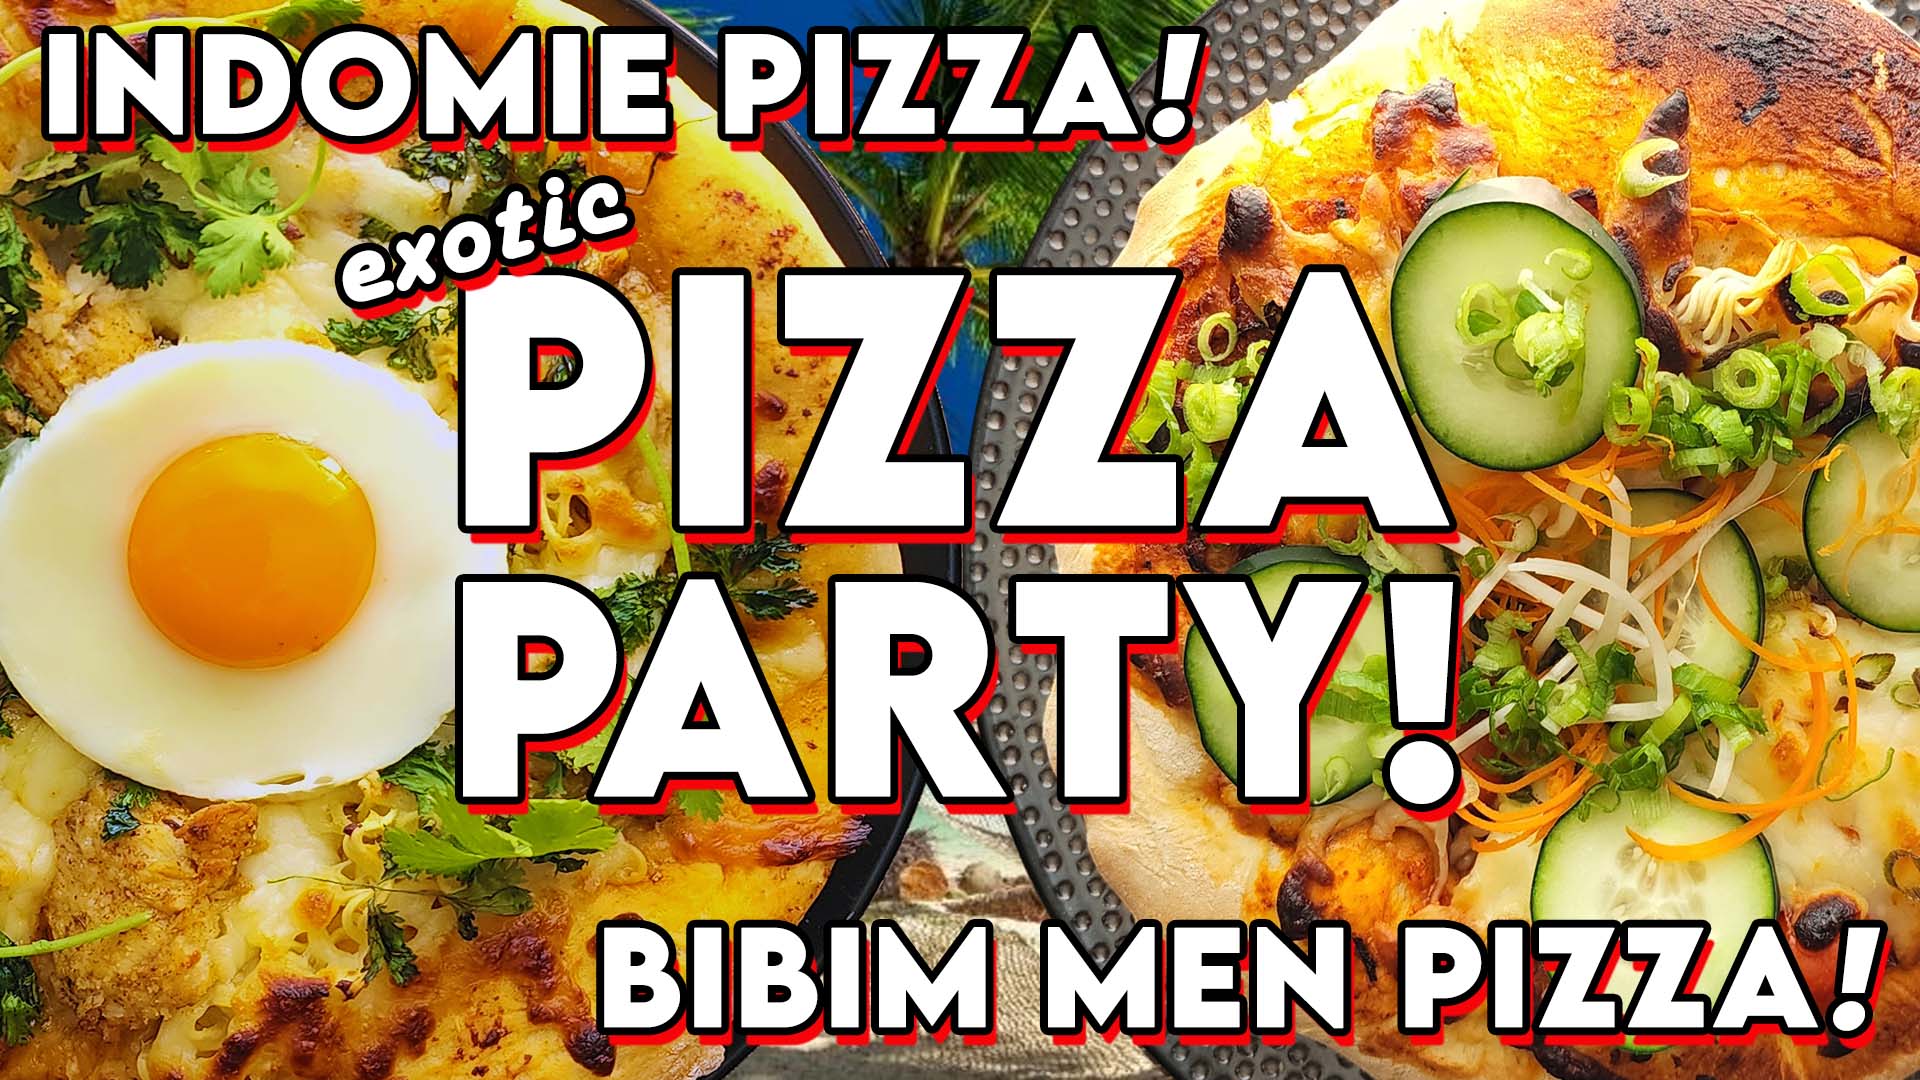 Exotic Pizza Party! Indomie Pizza! Bibim Men Pizza! photo